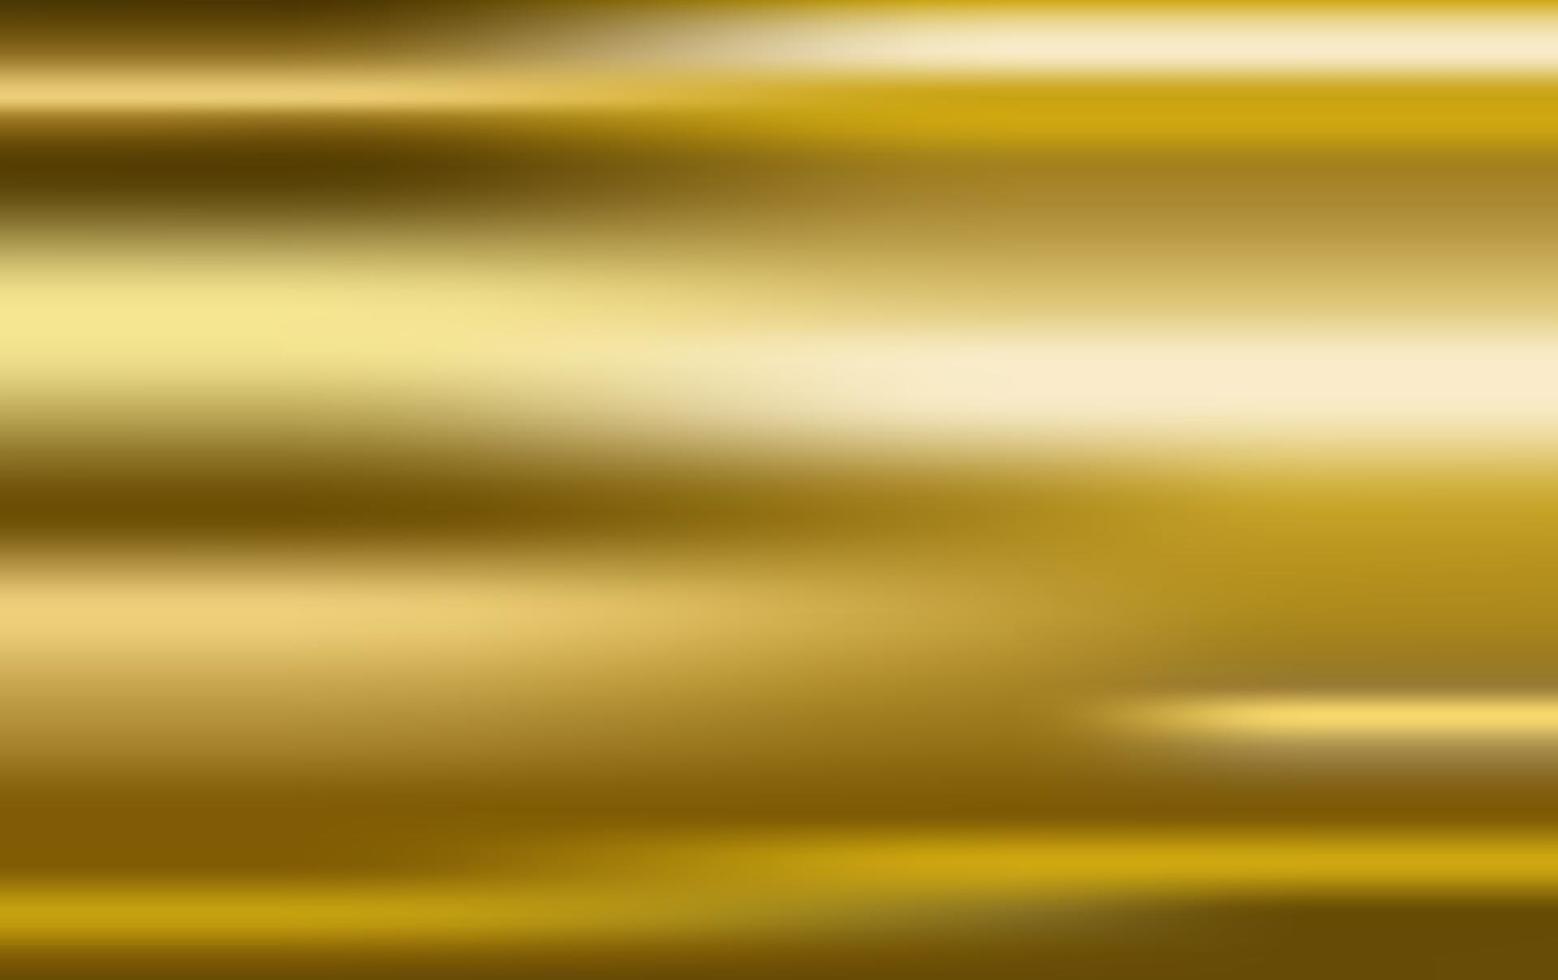 Vektor des Goldgradienten. Metallische Vektorillustration der Goldgradientenhintergrundbeschaffenheit für Luxusrahmen, -band, -fahne, -web, -münze und -etikett. elegante Licht- und Glanzvektorschablone